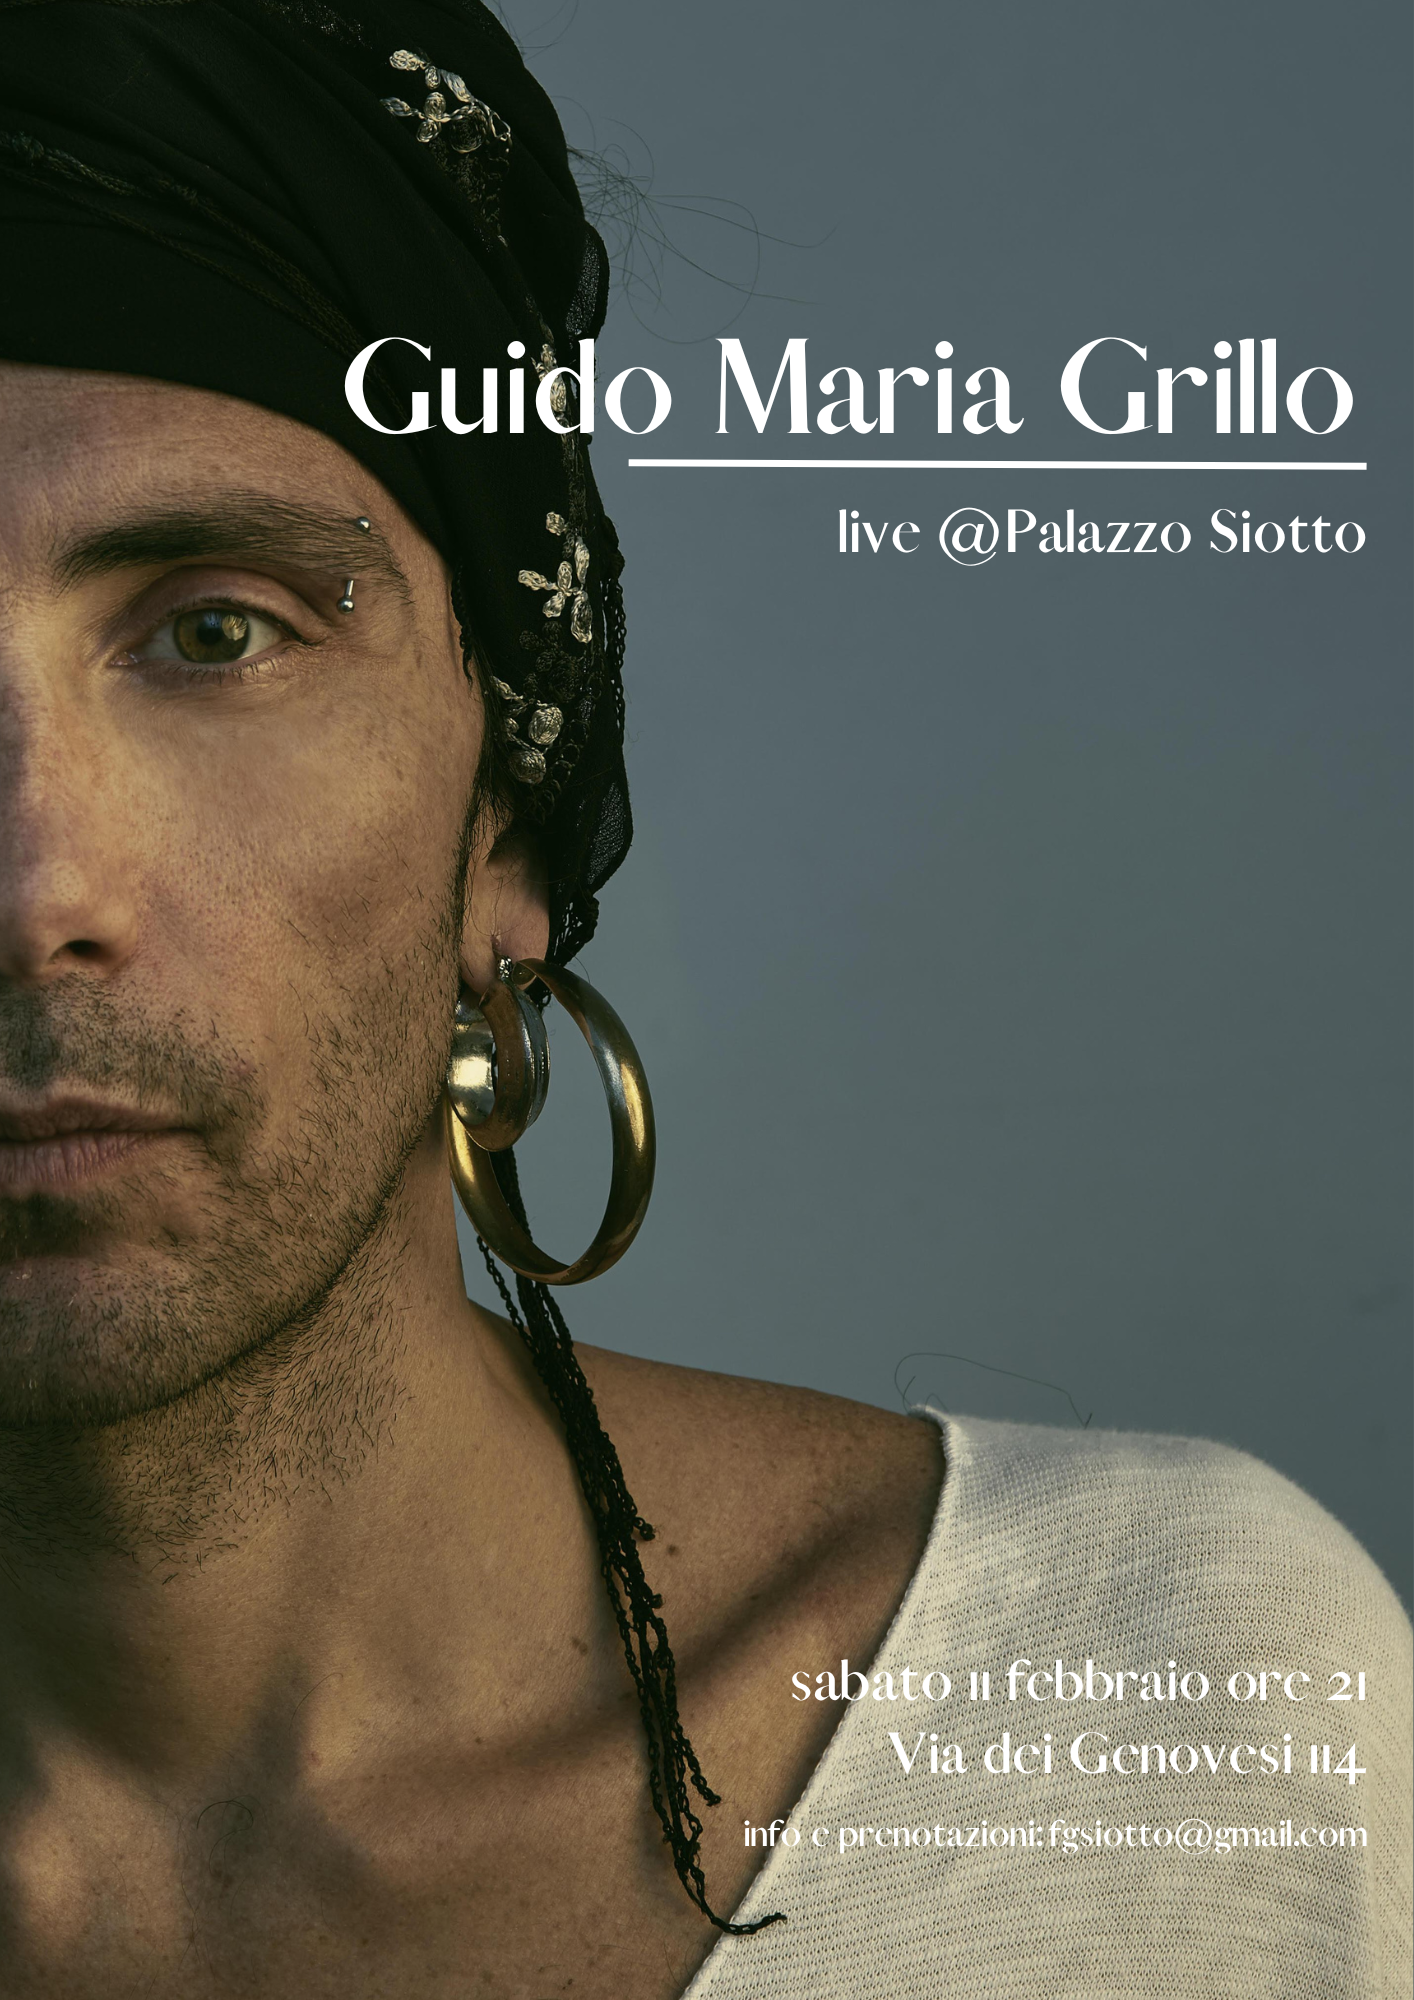 Al momento stai visualizzando Guido Maria Grillo live @ Palazzo Siotto